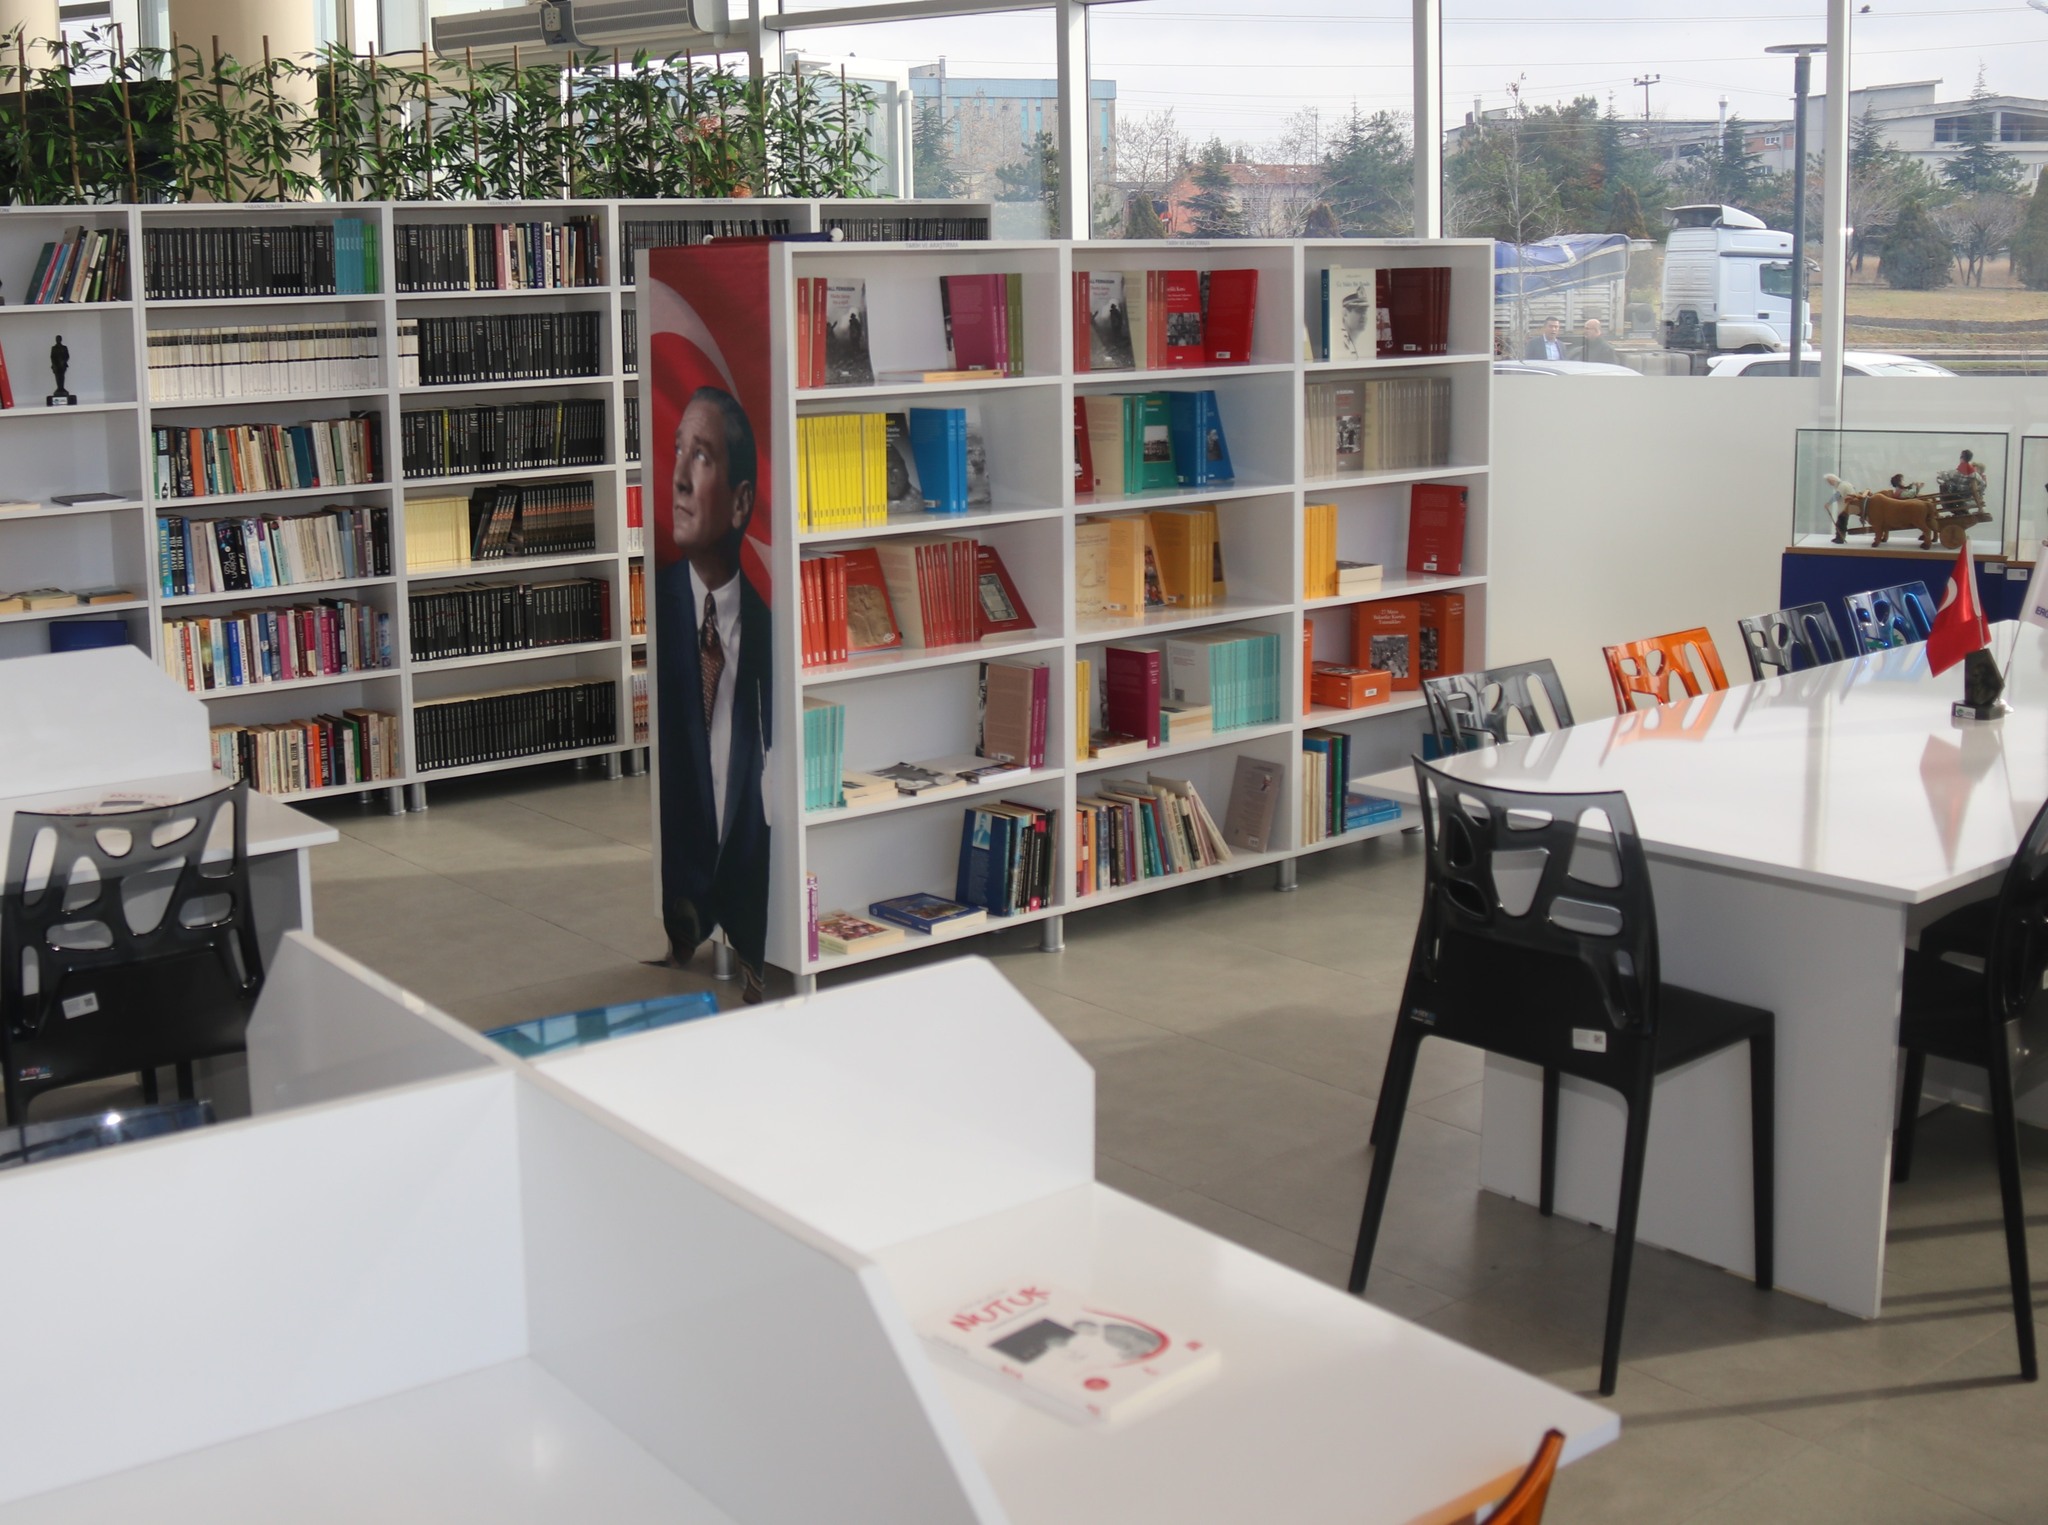 Başöğretmen Mustafa Kemal Halk Kütüphanesi hafta sonları da açık